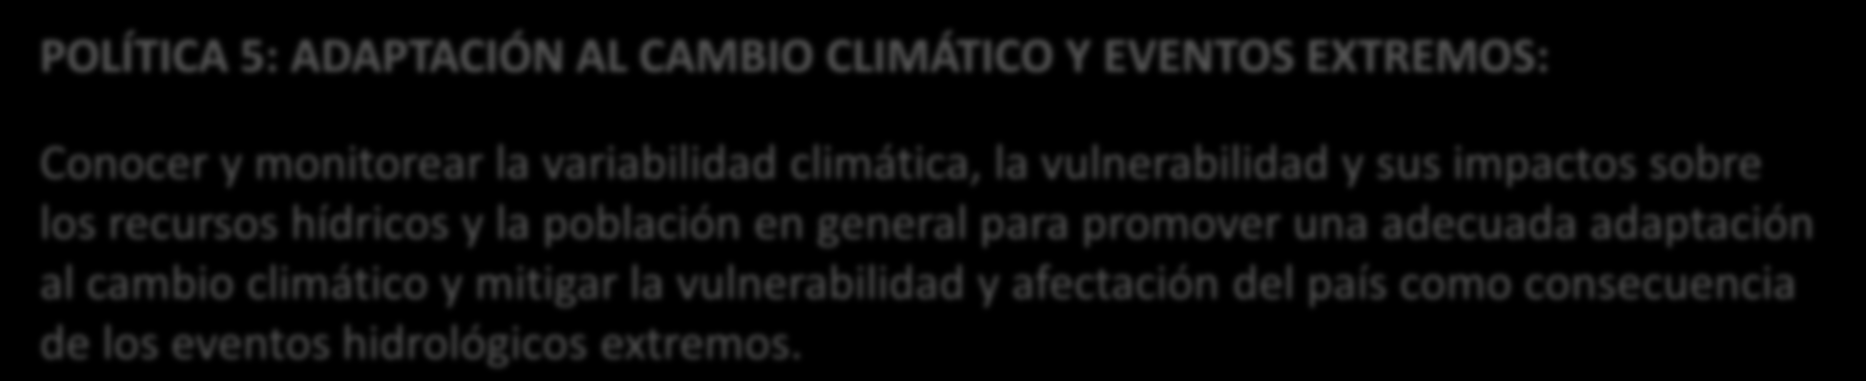 6.- POLÍTICAS Y ESTRATEGIAS POLÍTICA 5: ADAPTACIÓN AL CAMBIO CLIMÁTICO Y EVENTOS EXTREMOS: Conocer y monitorear la variabilidad climática, la vulnerabilidad y sus impactos sobre los recursos hídricos